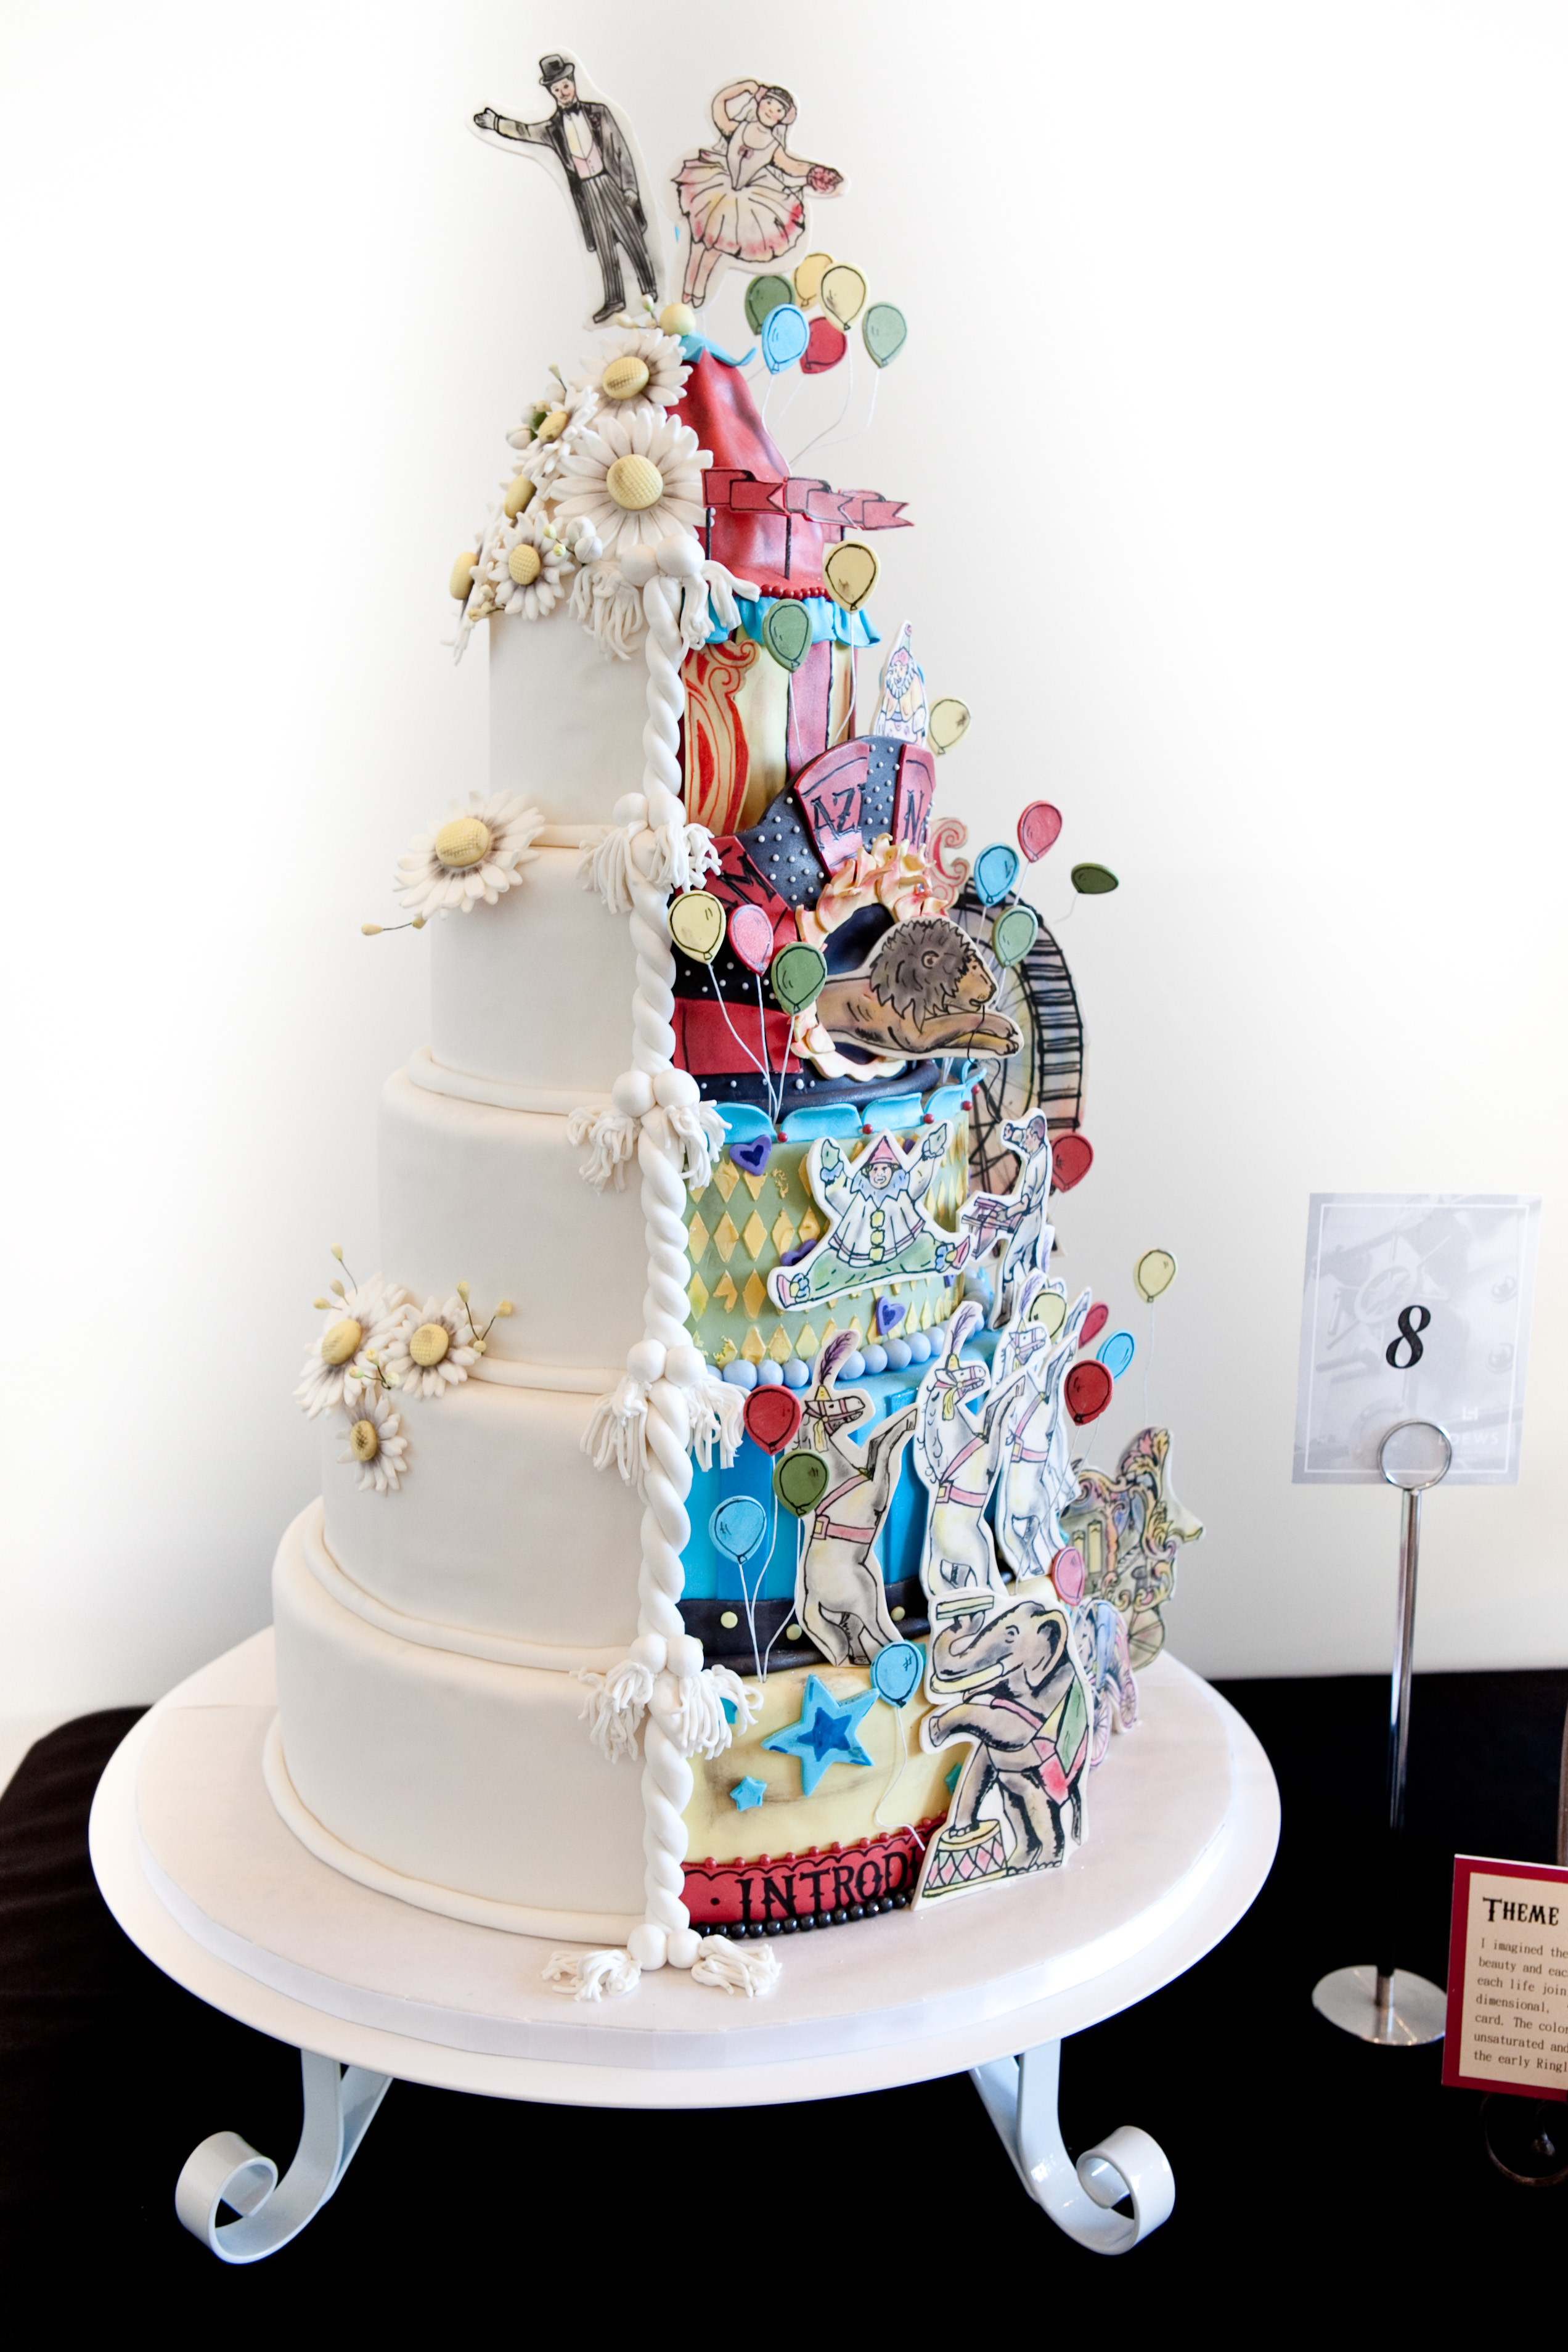 Food City Wedding Cakes
 Let Them Eat Cake City of Hope Celebrates 10 Years